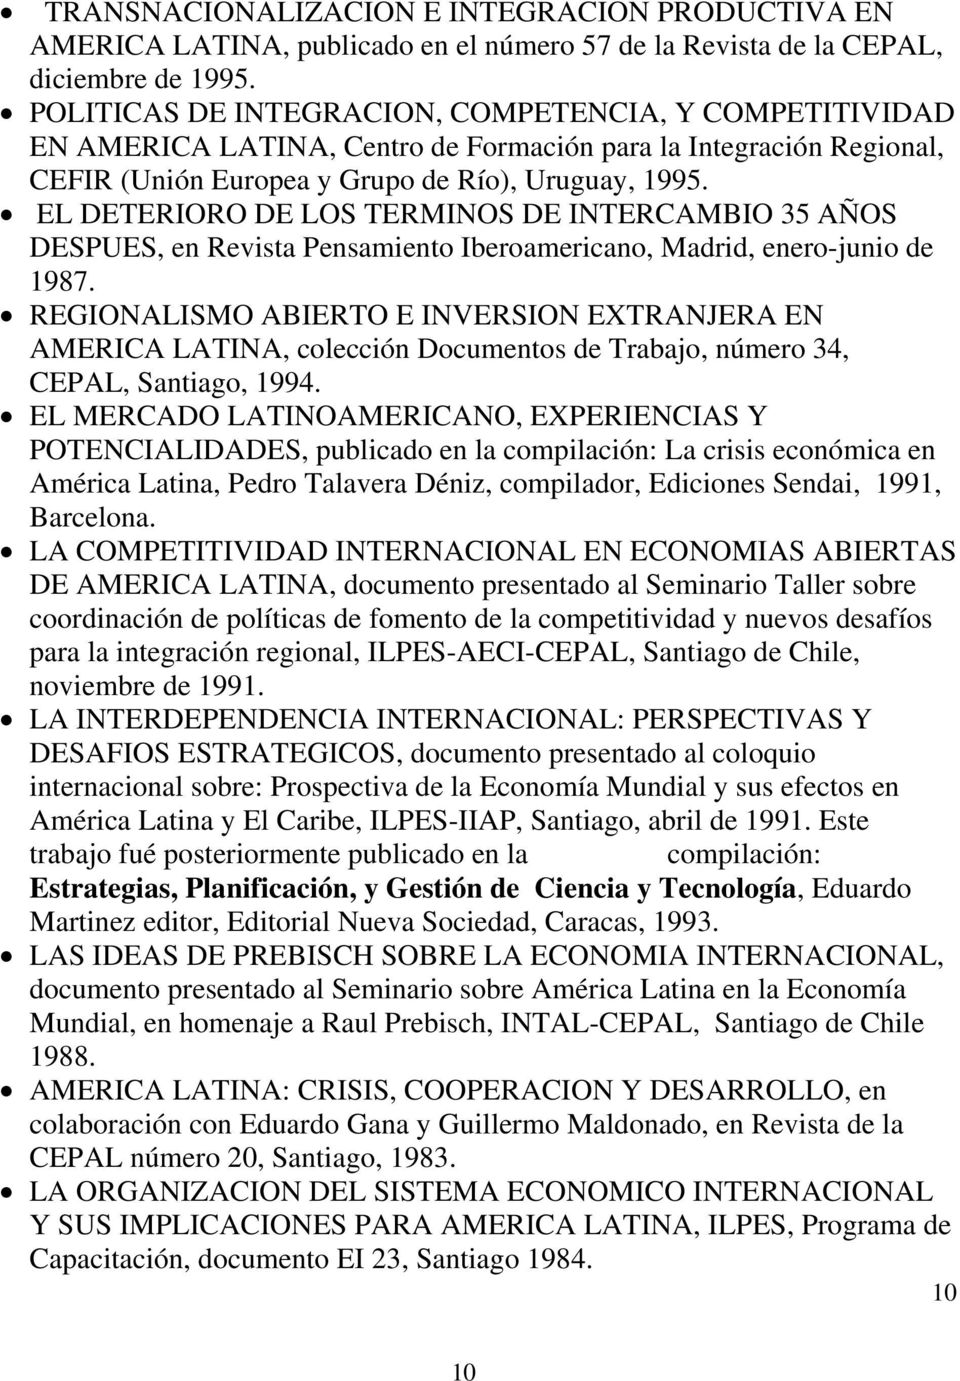 EL DETERIORO DE LOS TERMINOS DE INTERCAMBIO 35 AÑOS DESPUES, en Revista Pensamiento Iberoamericano, Madrid, enero-junio de 1987.